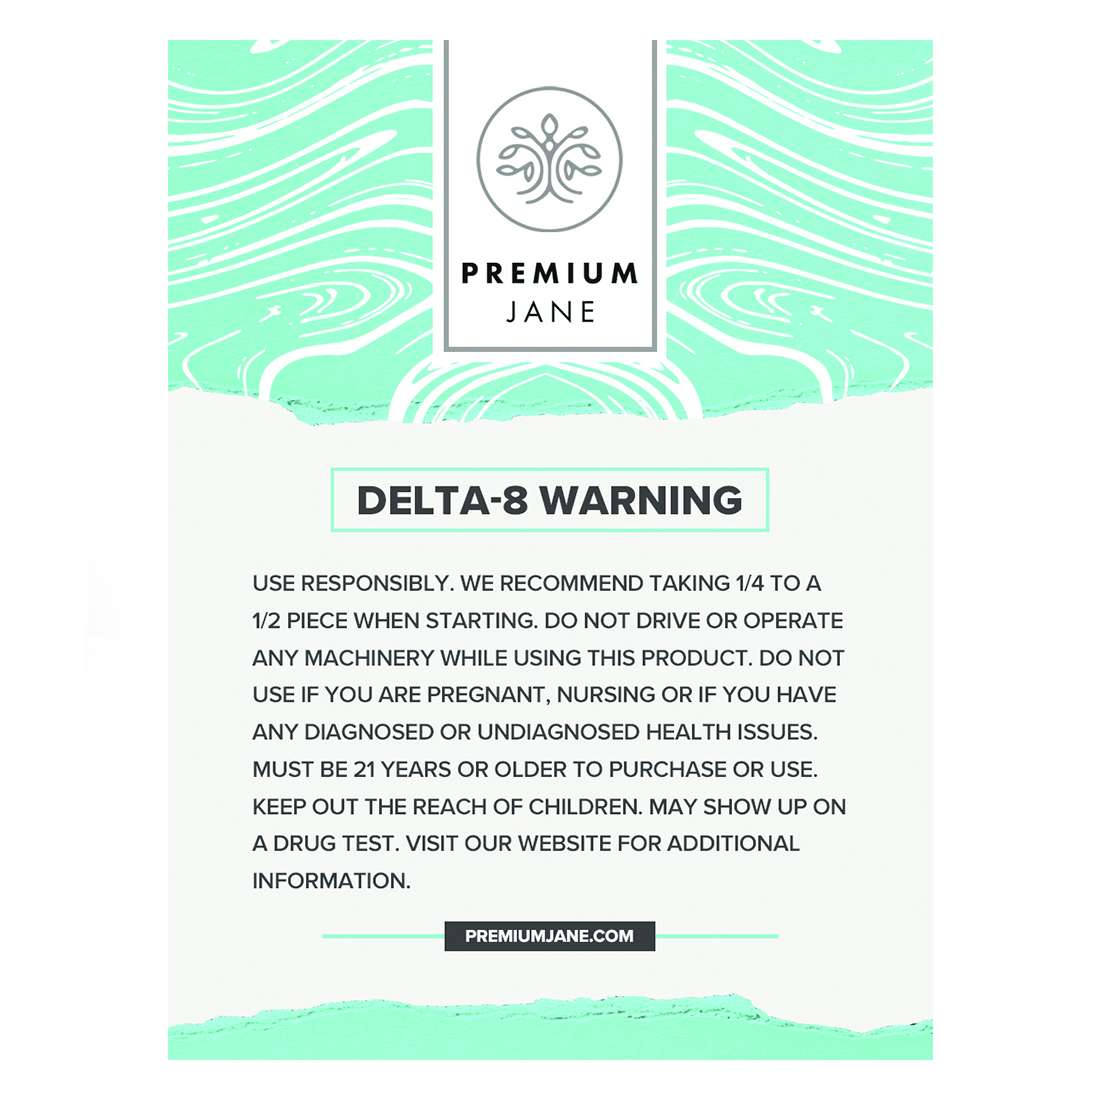 Premium Jane 625 mg Delta 8 Gummies Best Price